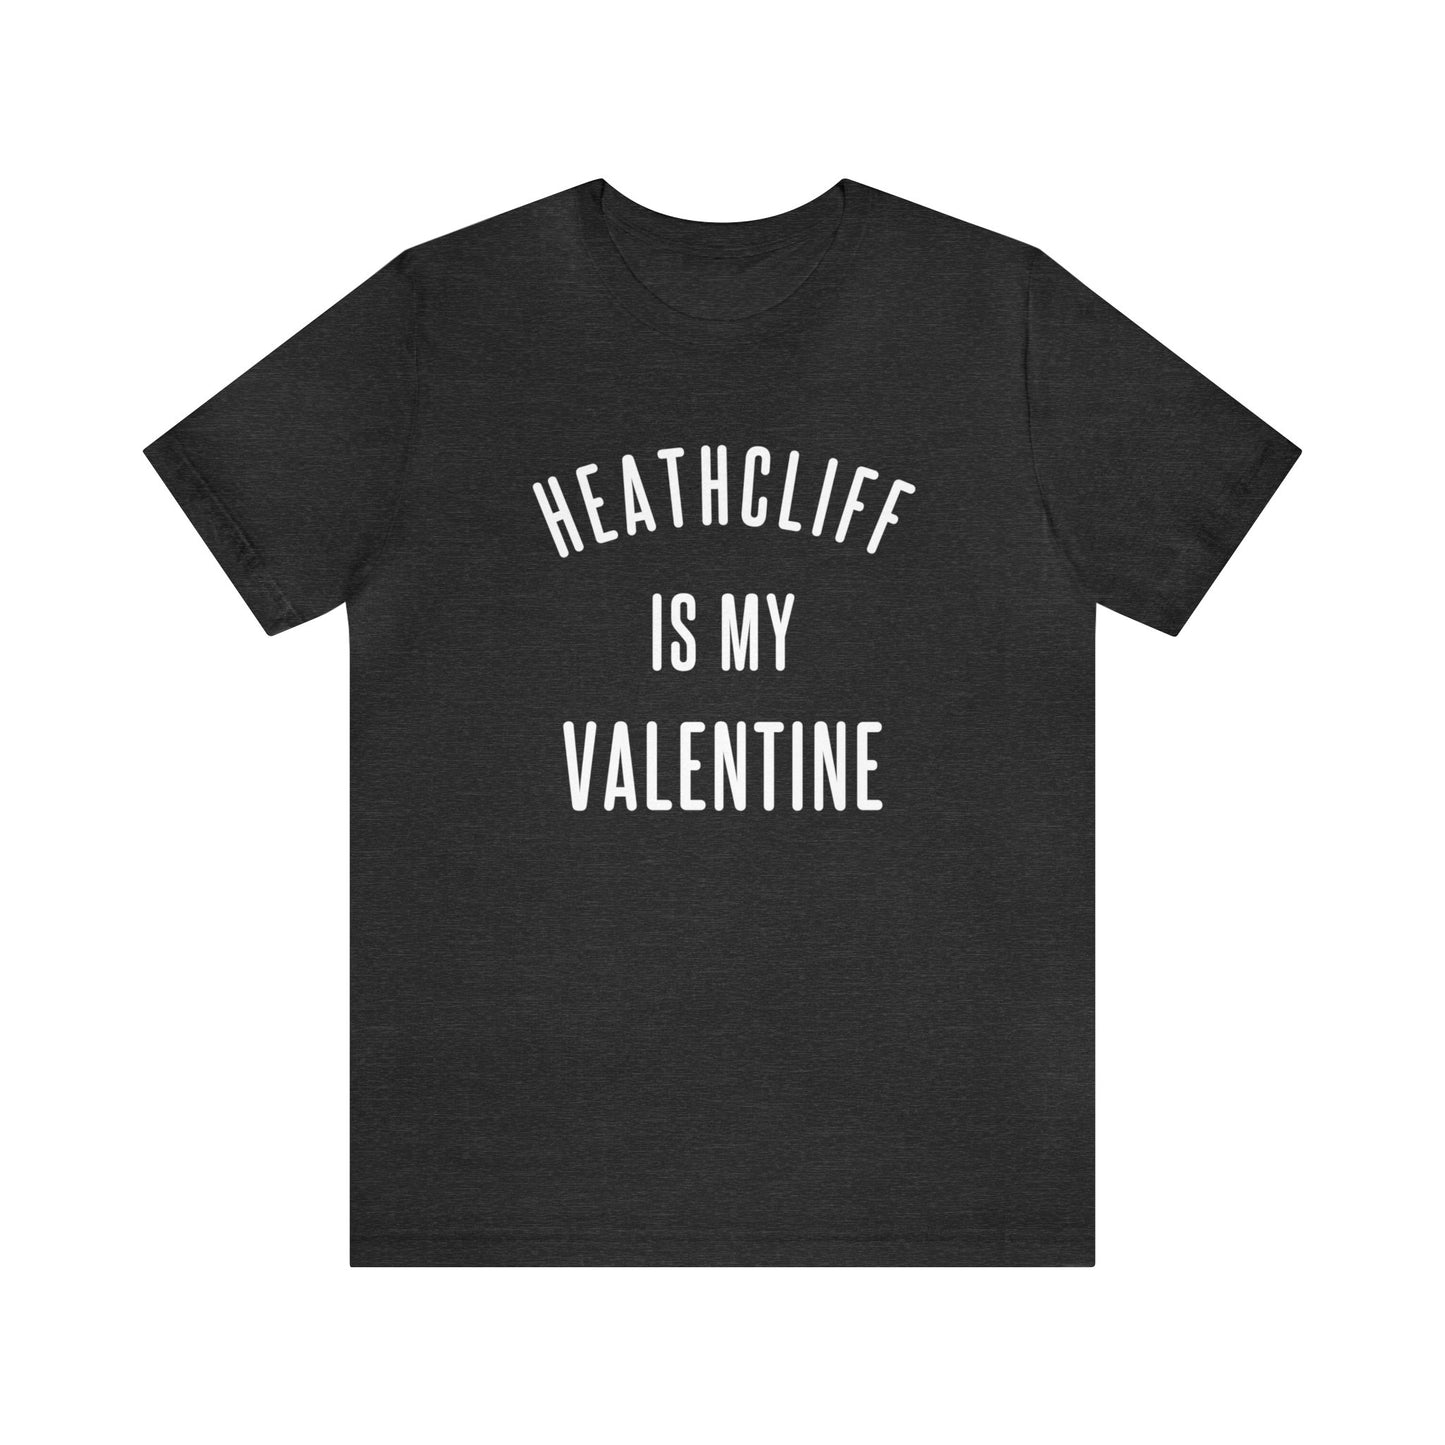 Heathcliff is my Valentine Short Sleeve Tee